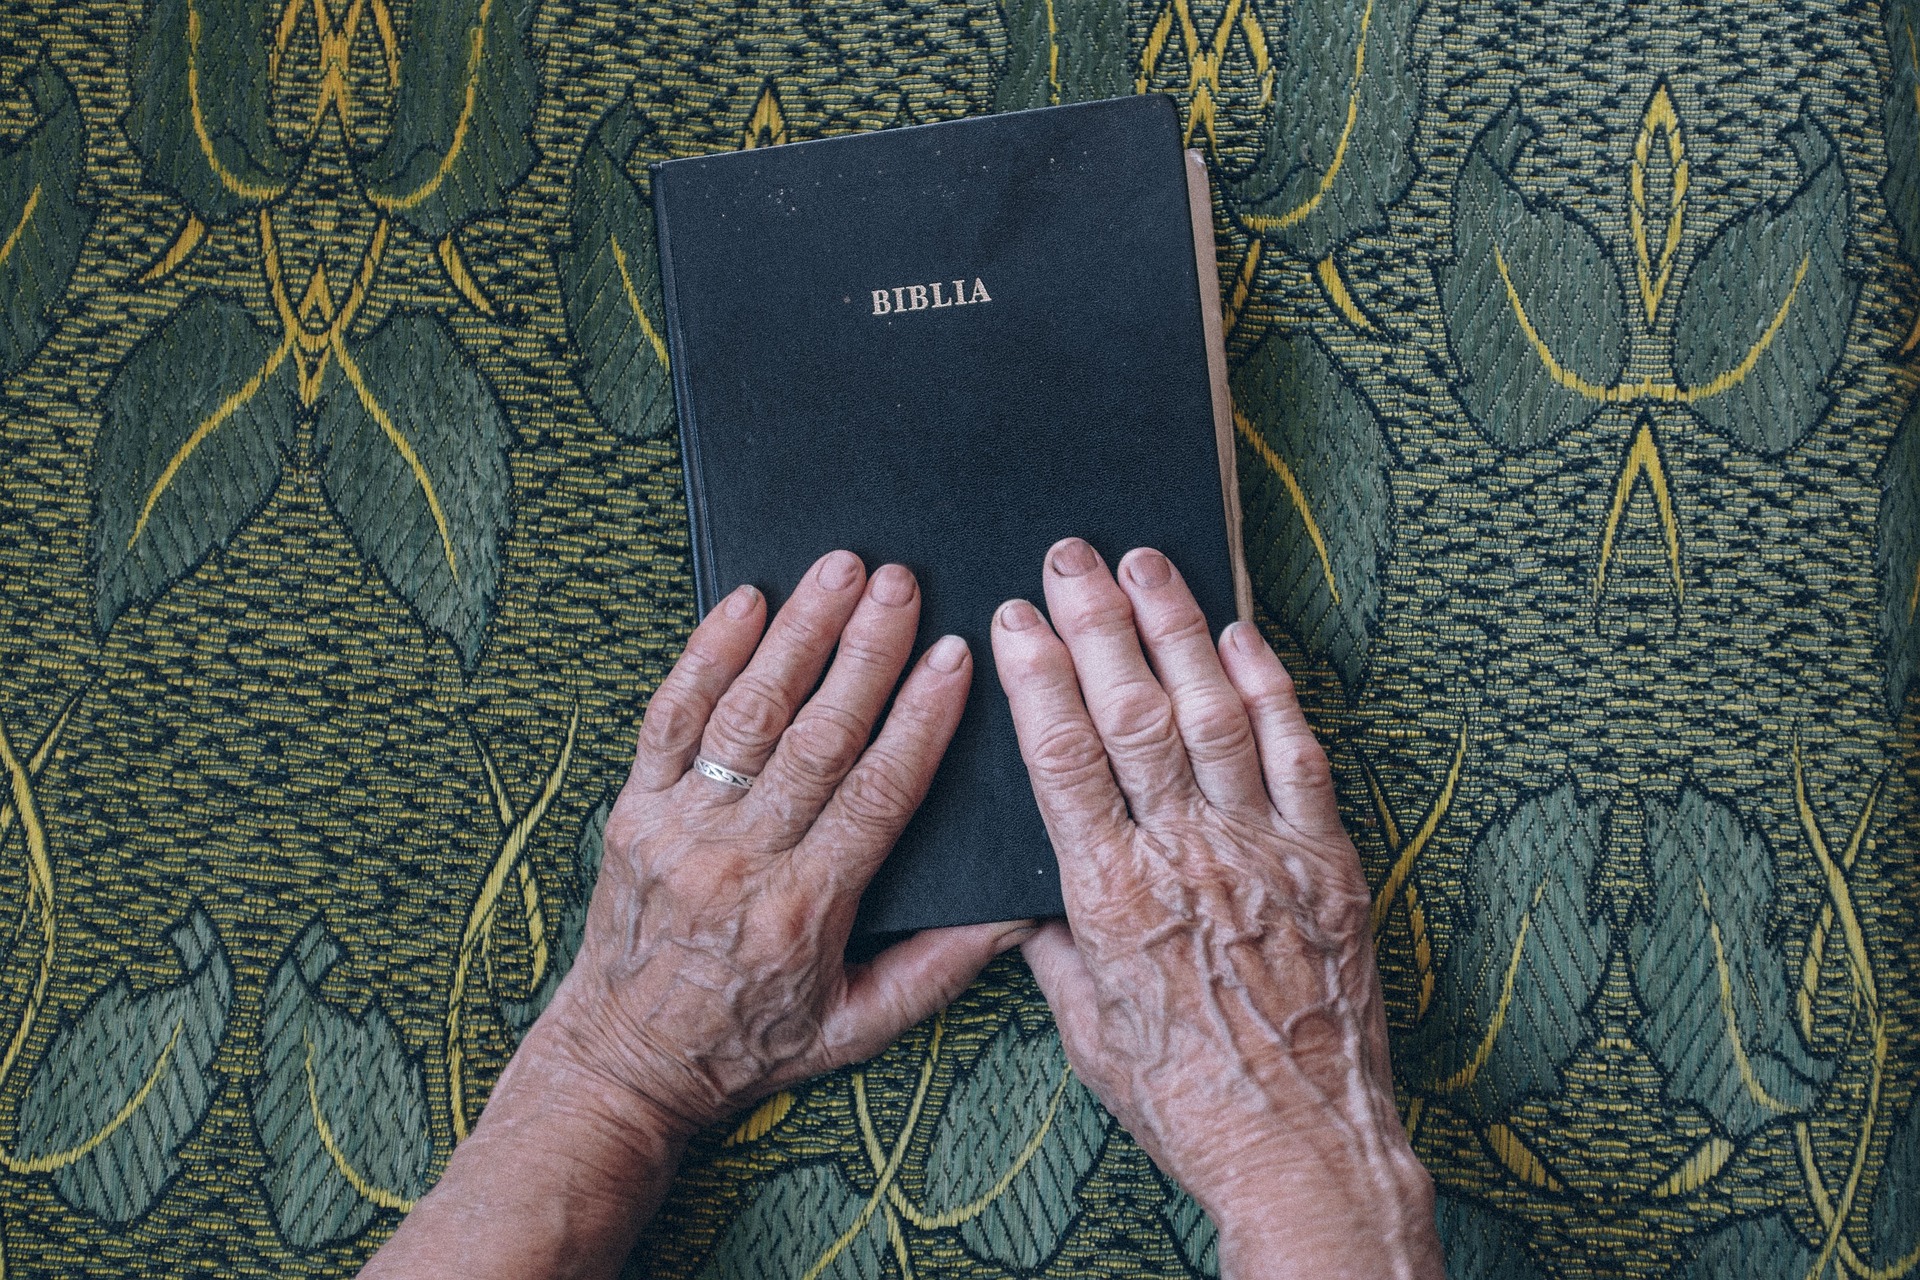 Post precedente: Nuova truffa agli anziani: migliaia di euro per una Bibbia